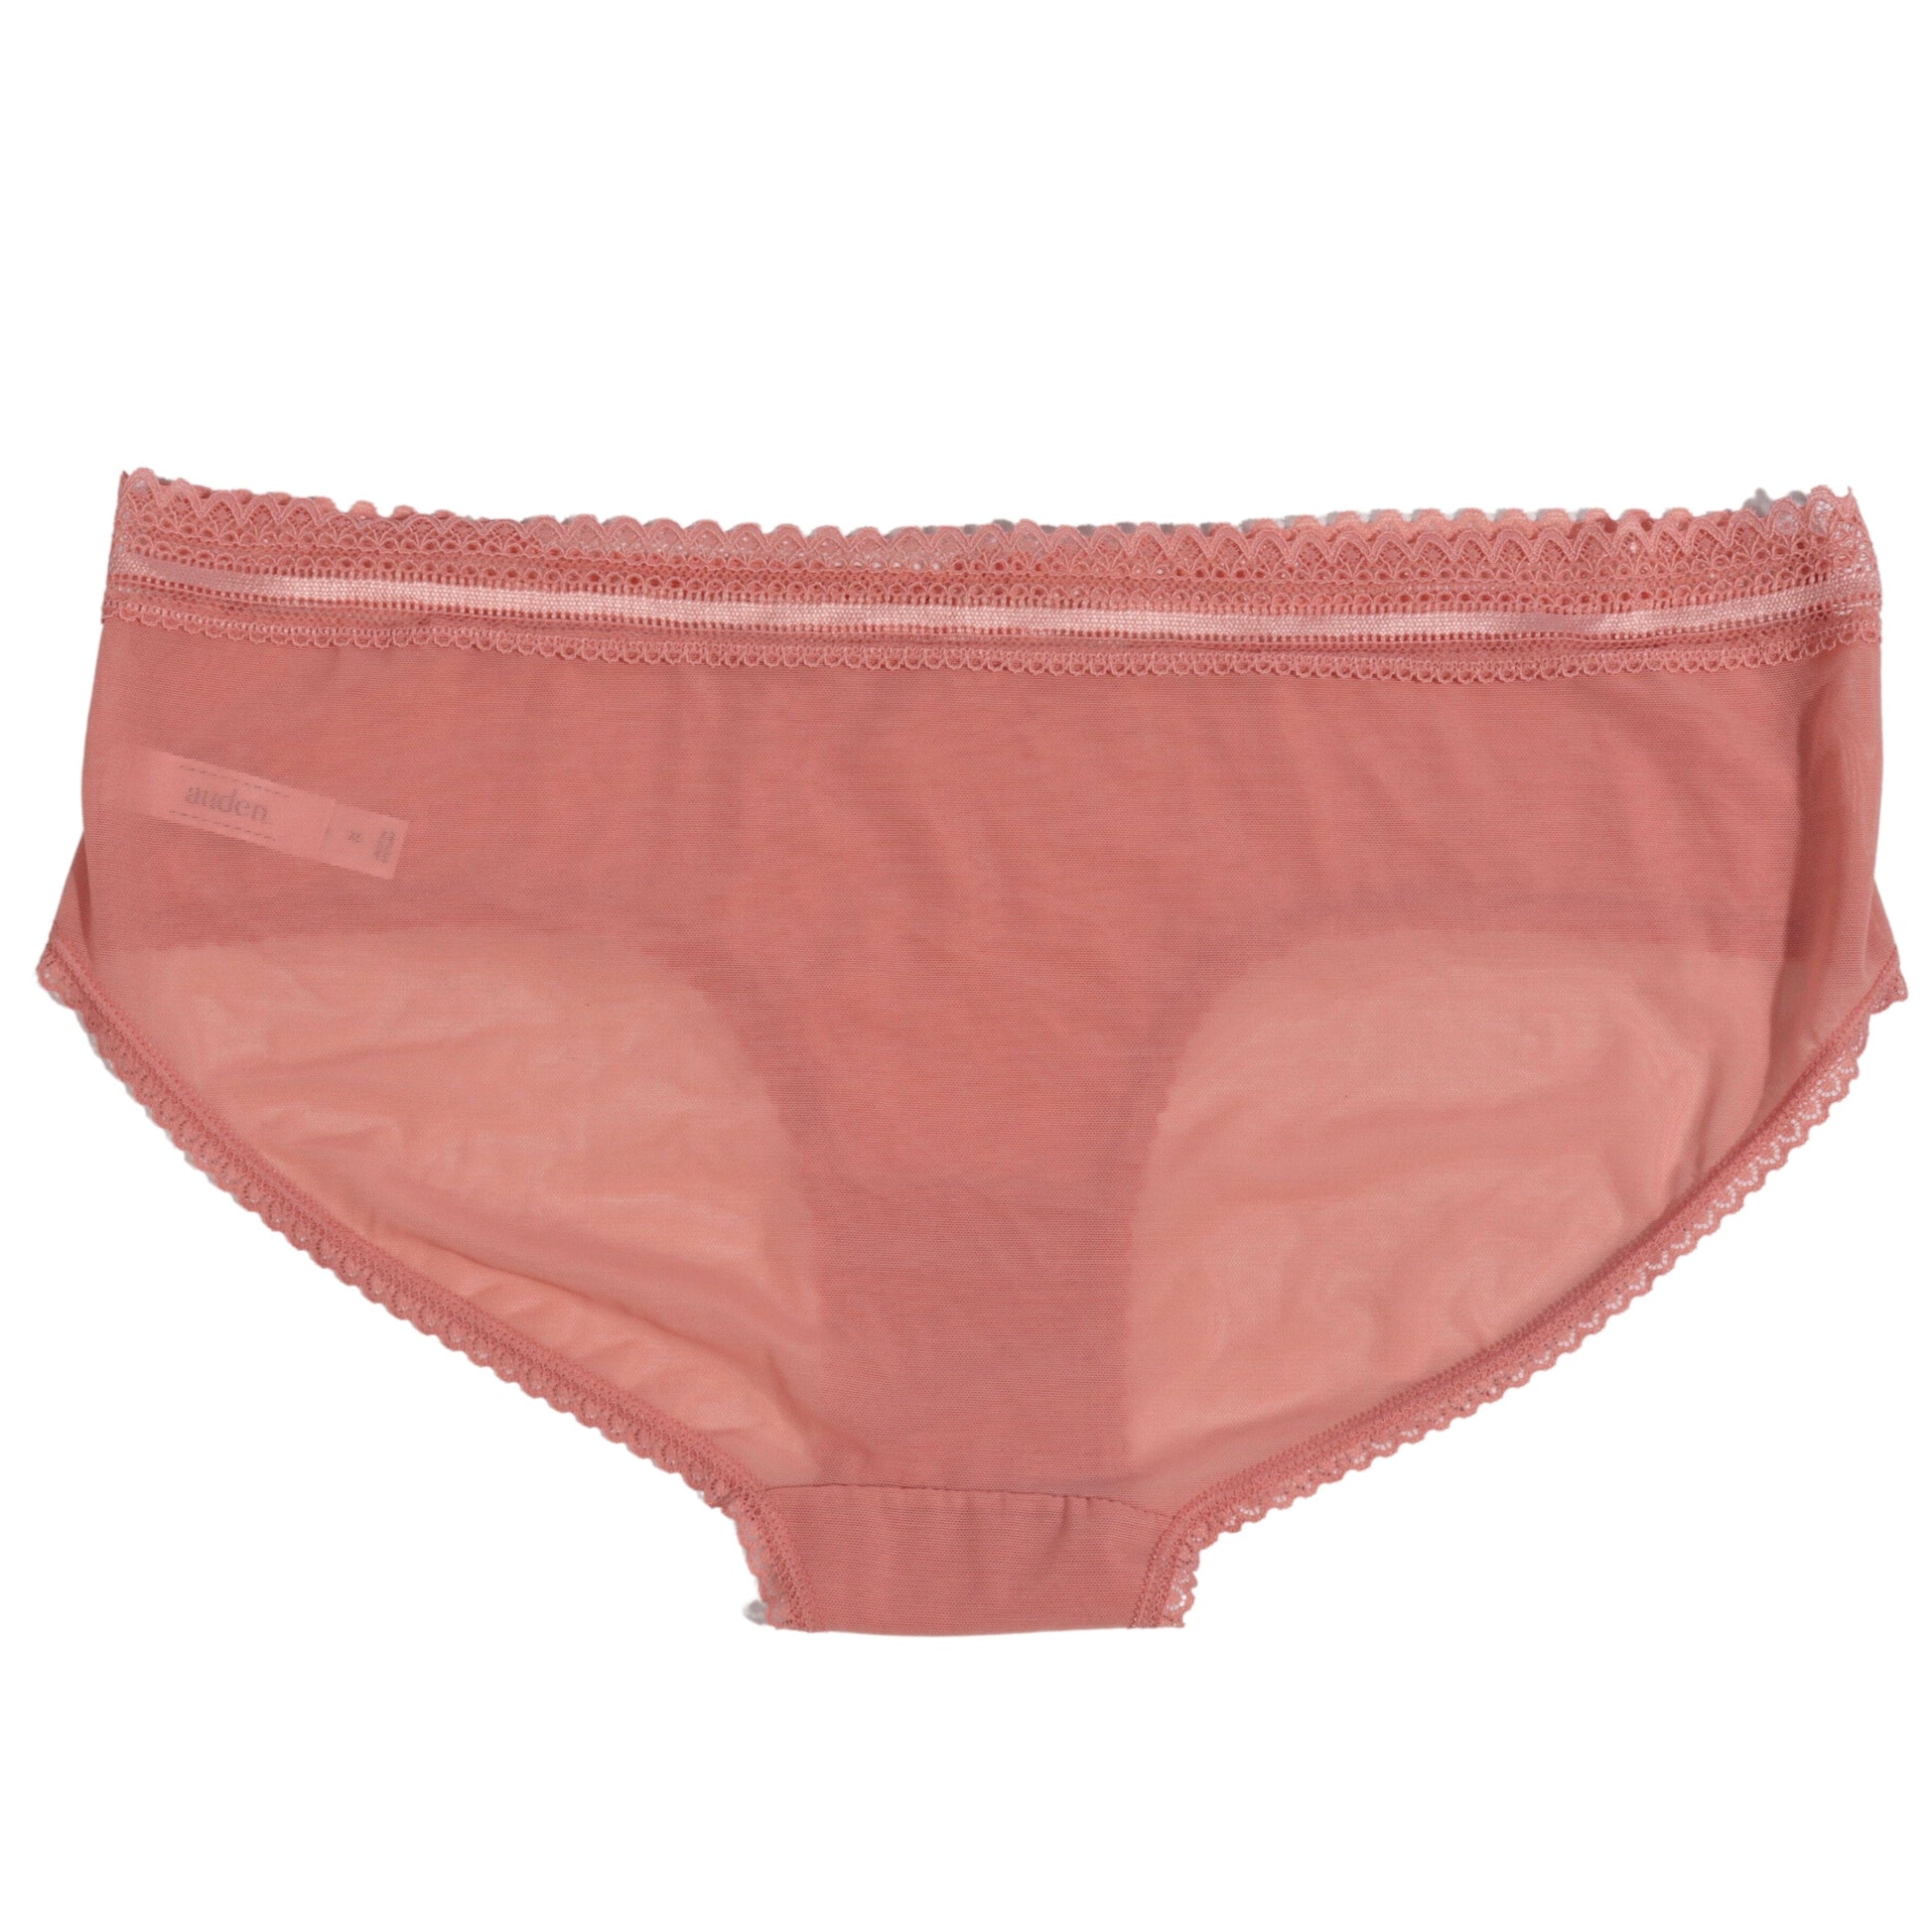 https://brandsandbeyond.me/cdn/shop/files/auden-womens-underwear-auden-panties-briefs-transparent-waist-lingerie-female-32222819123235.jpg?v=1698825182&width=1946